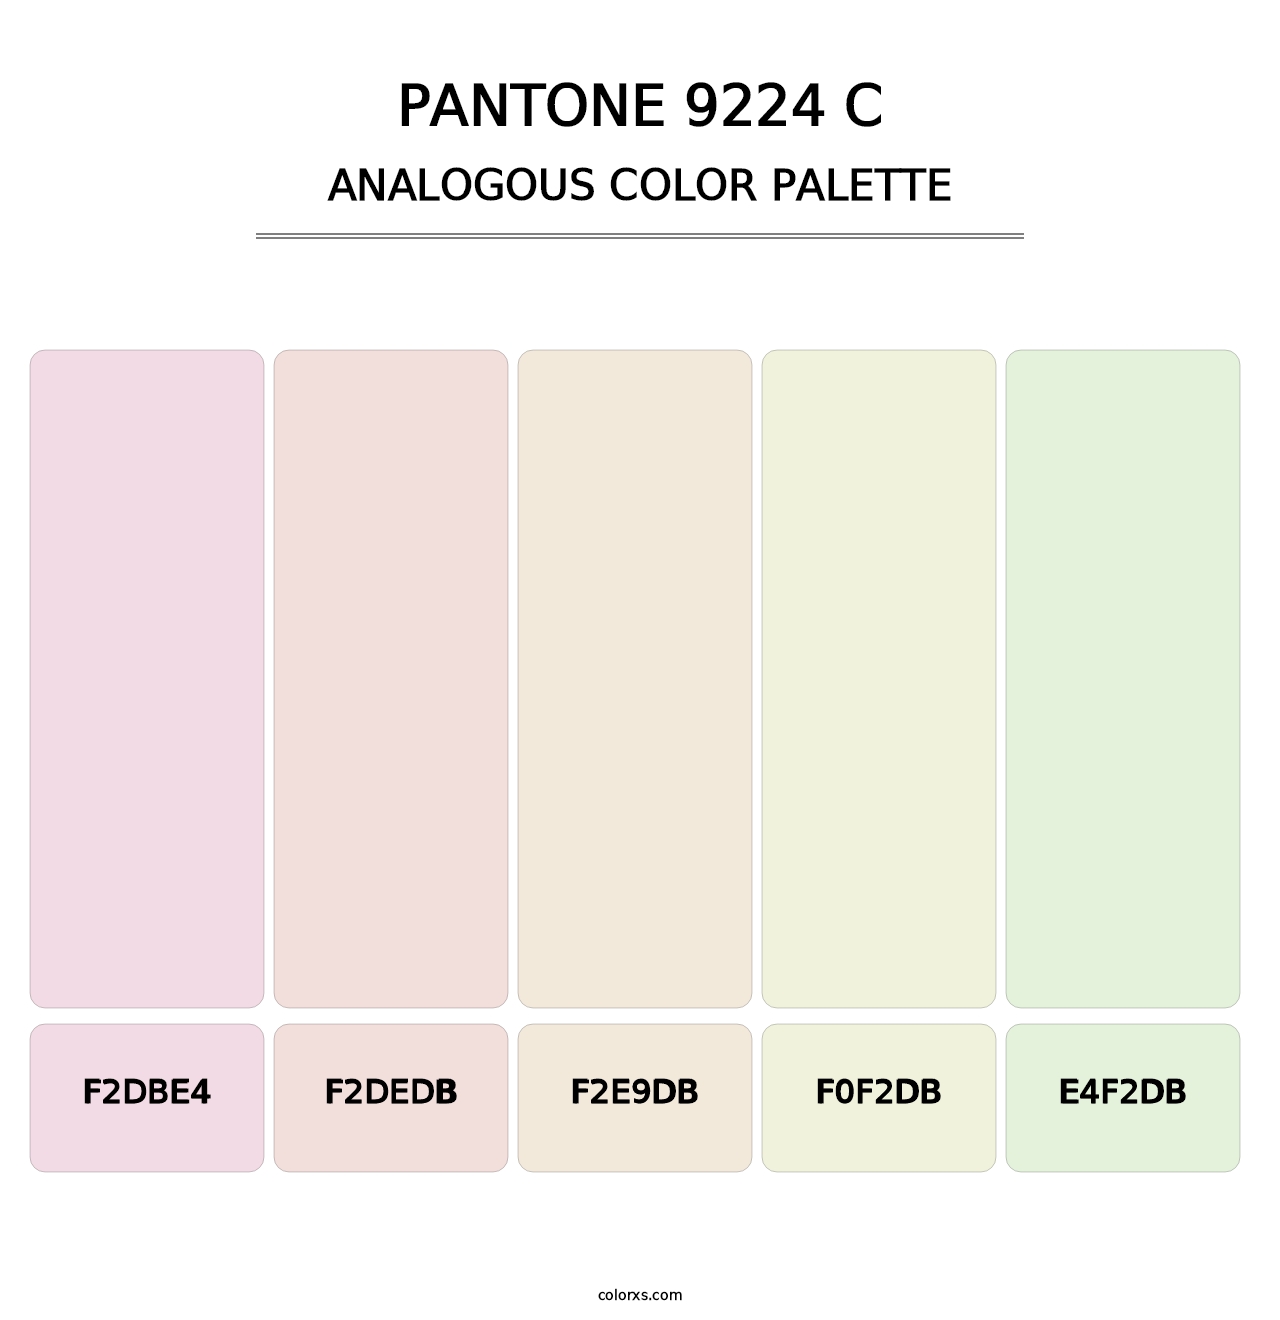 PANTONE 9224 C - Analogous Color Palette